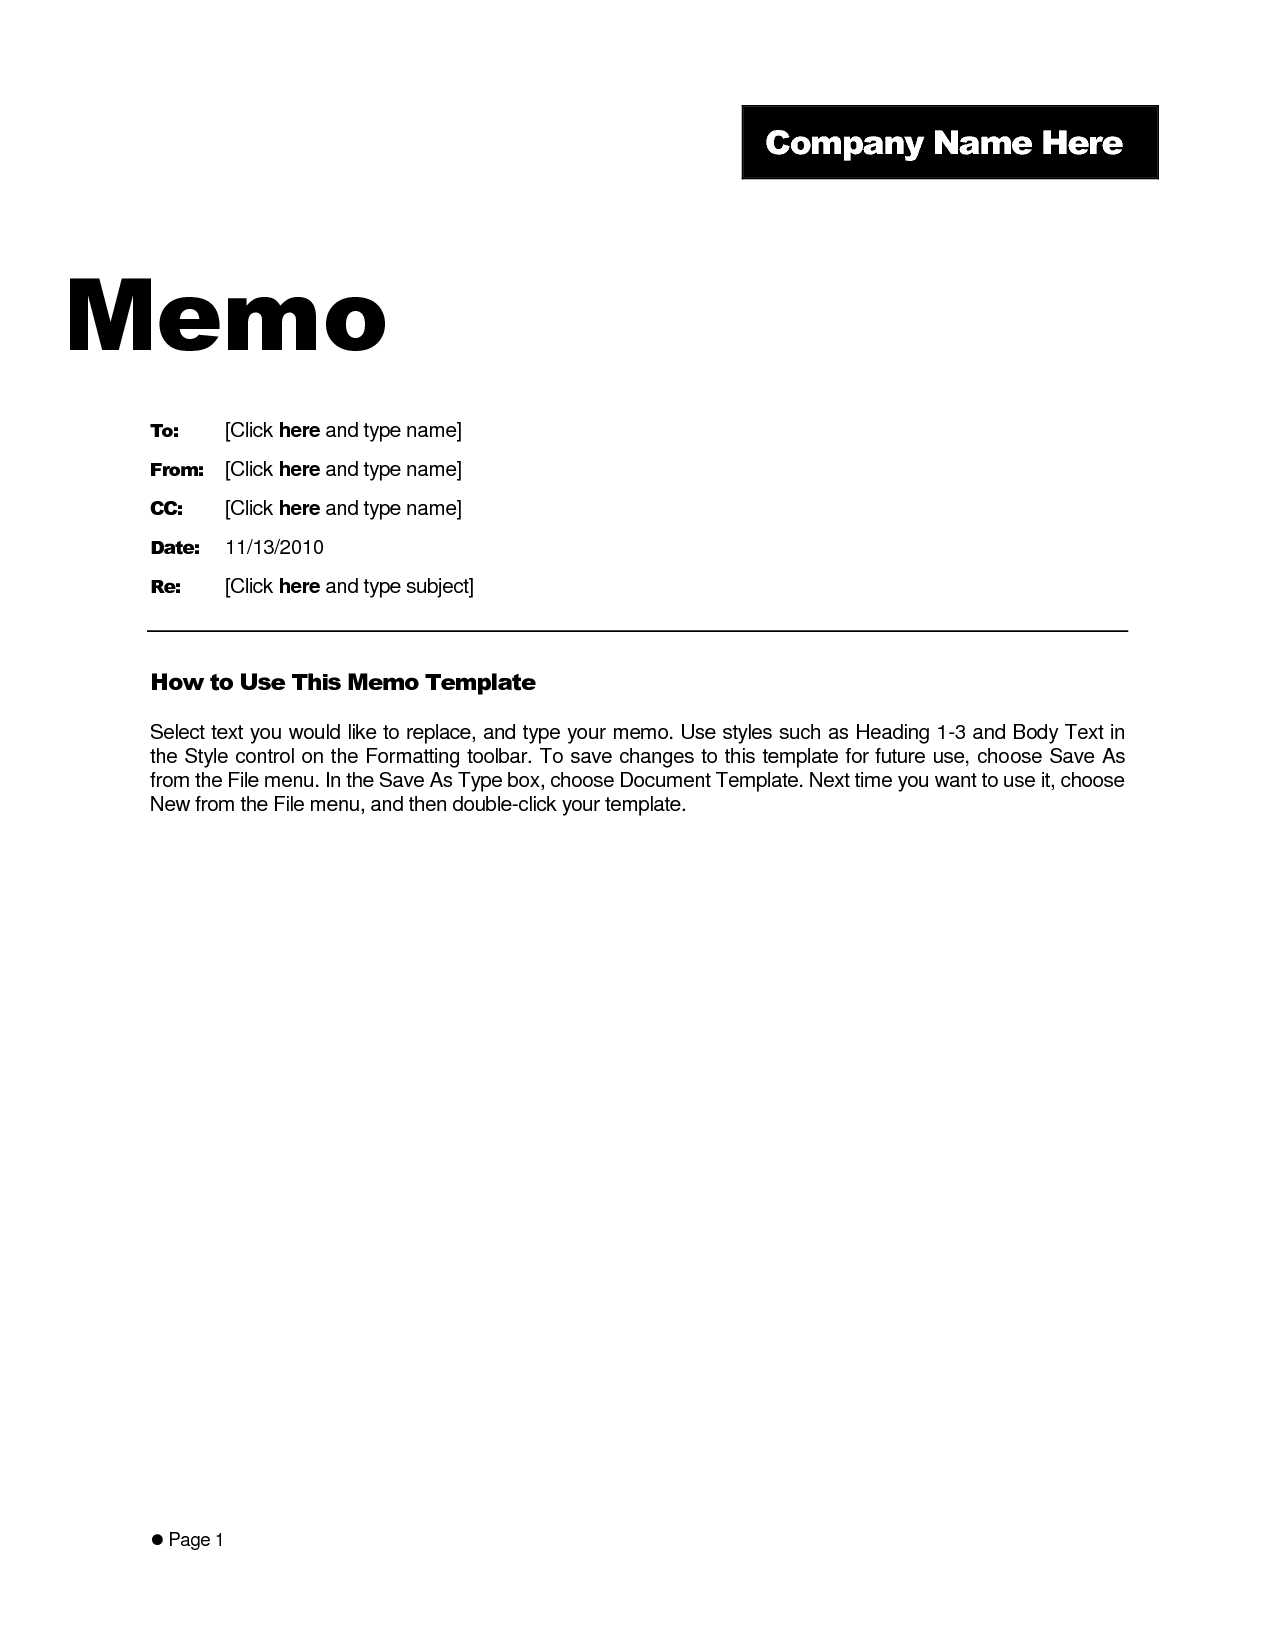 Free Memo Template Word 2010 – Kerren Regarding Memo Template Word 2013